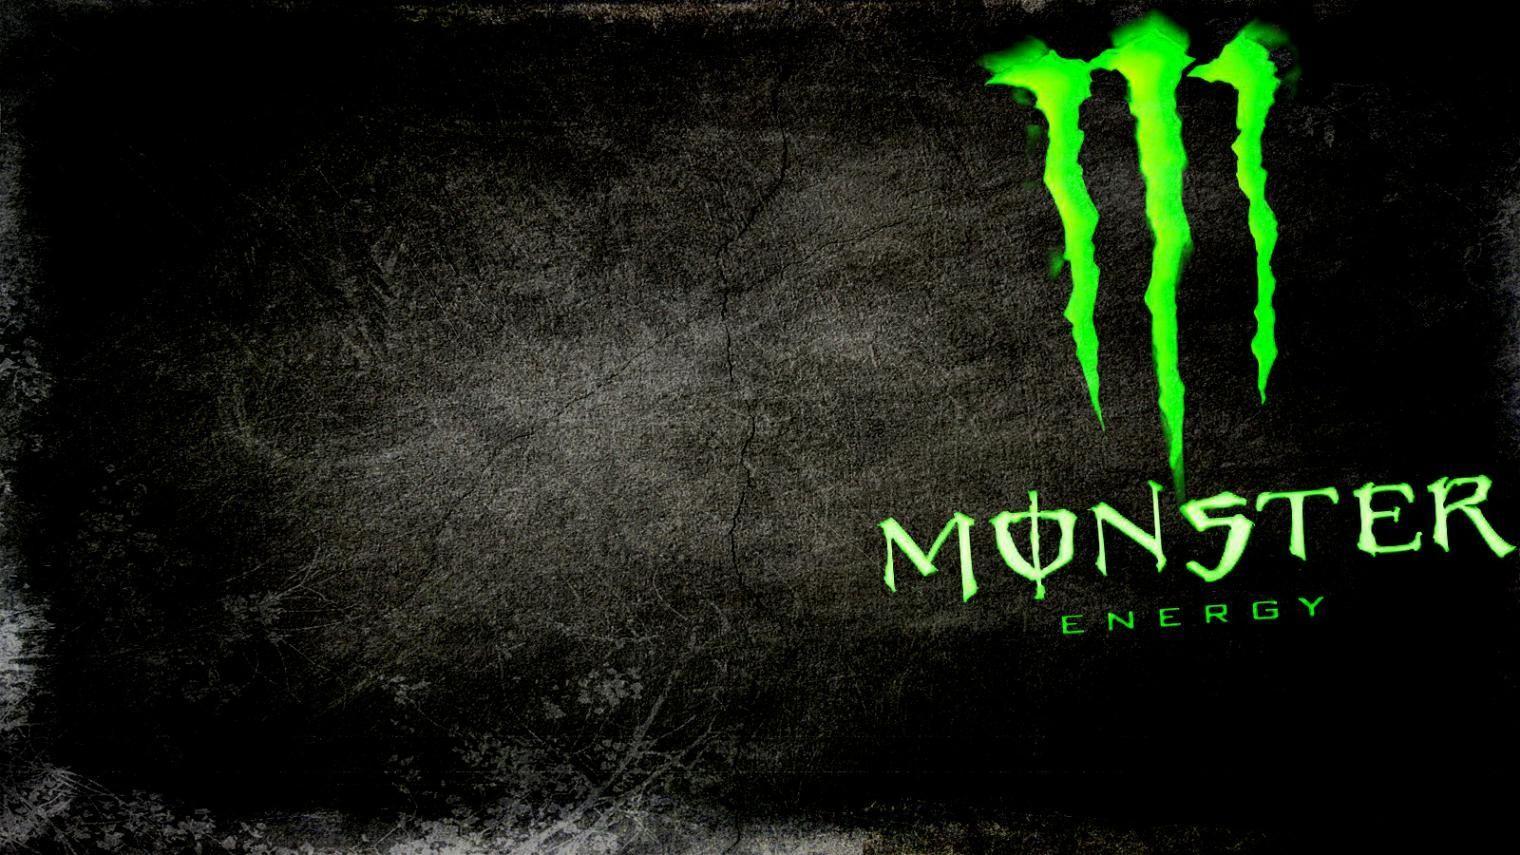 Monster Energy Logo Wallpaper. Wallpaperine.com in 2019